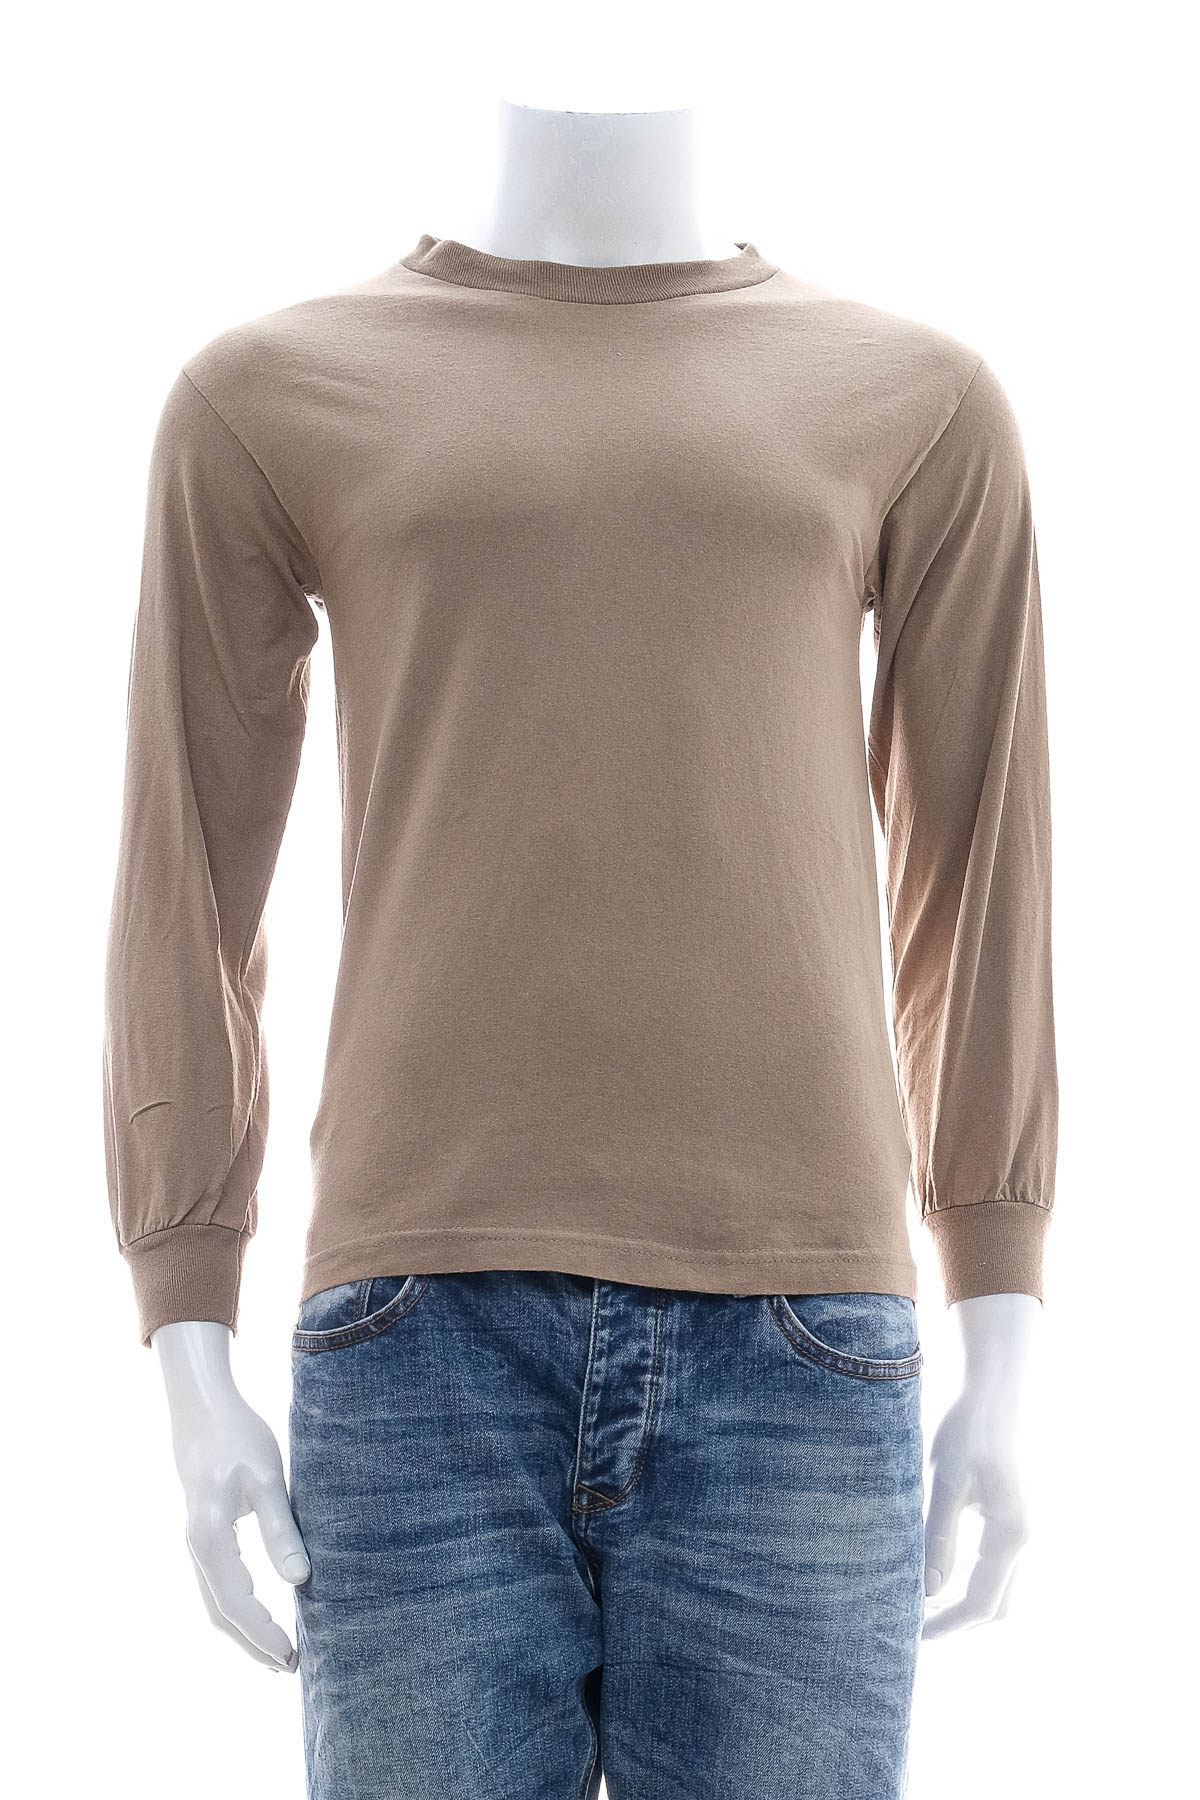 Men's blouse - ALSTYLE APPAREL & ACTIVE WEAR - 0